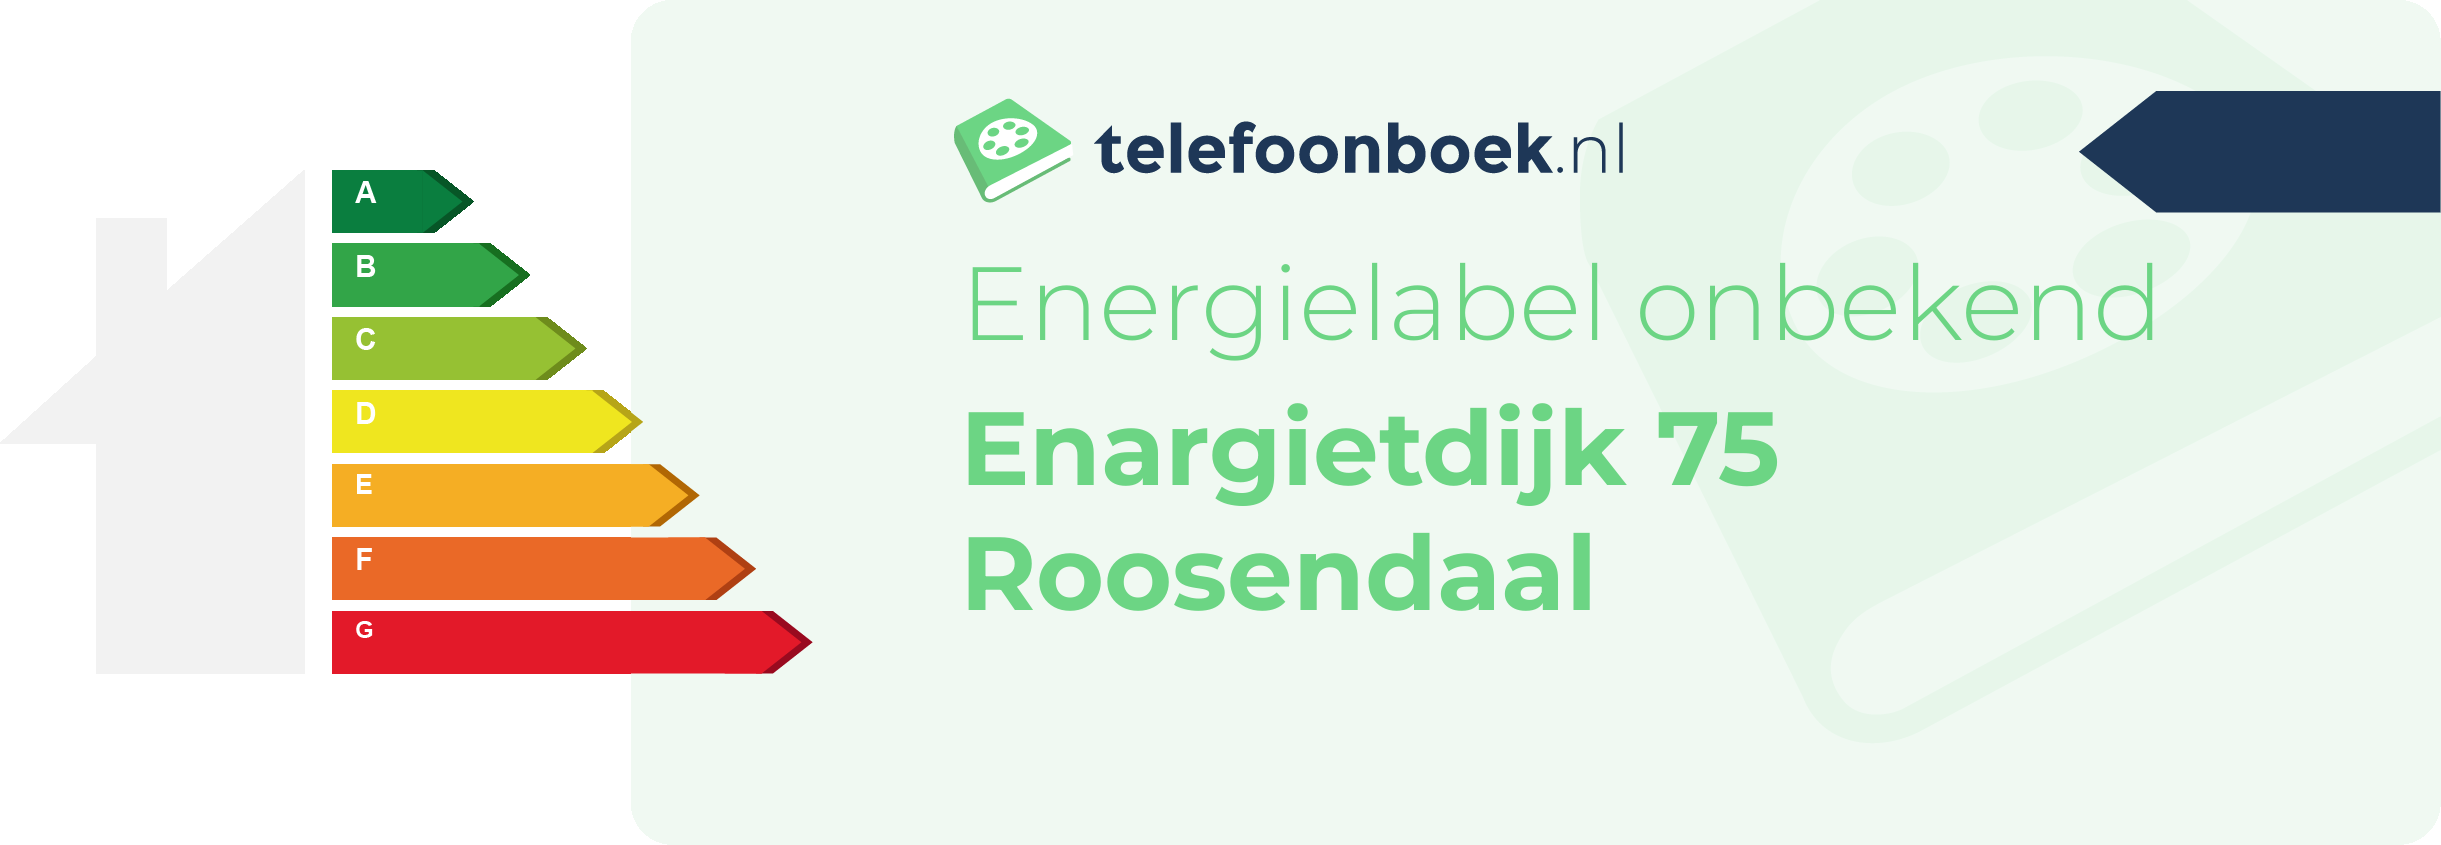 Energielabel Enargietdijk 75 Roosendaal